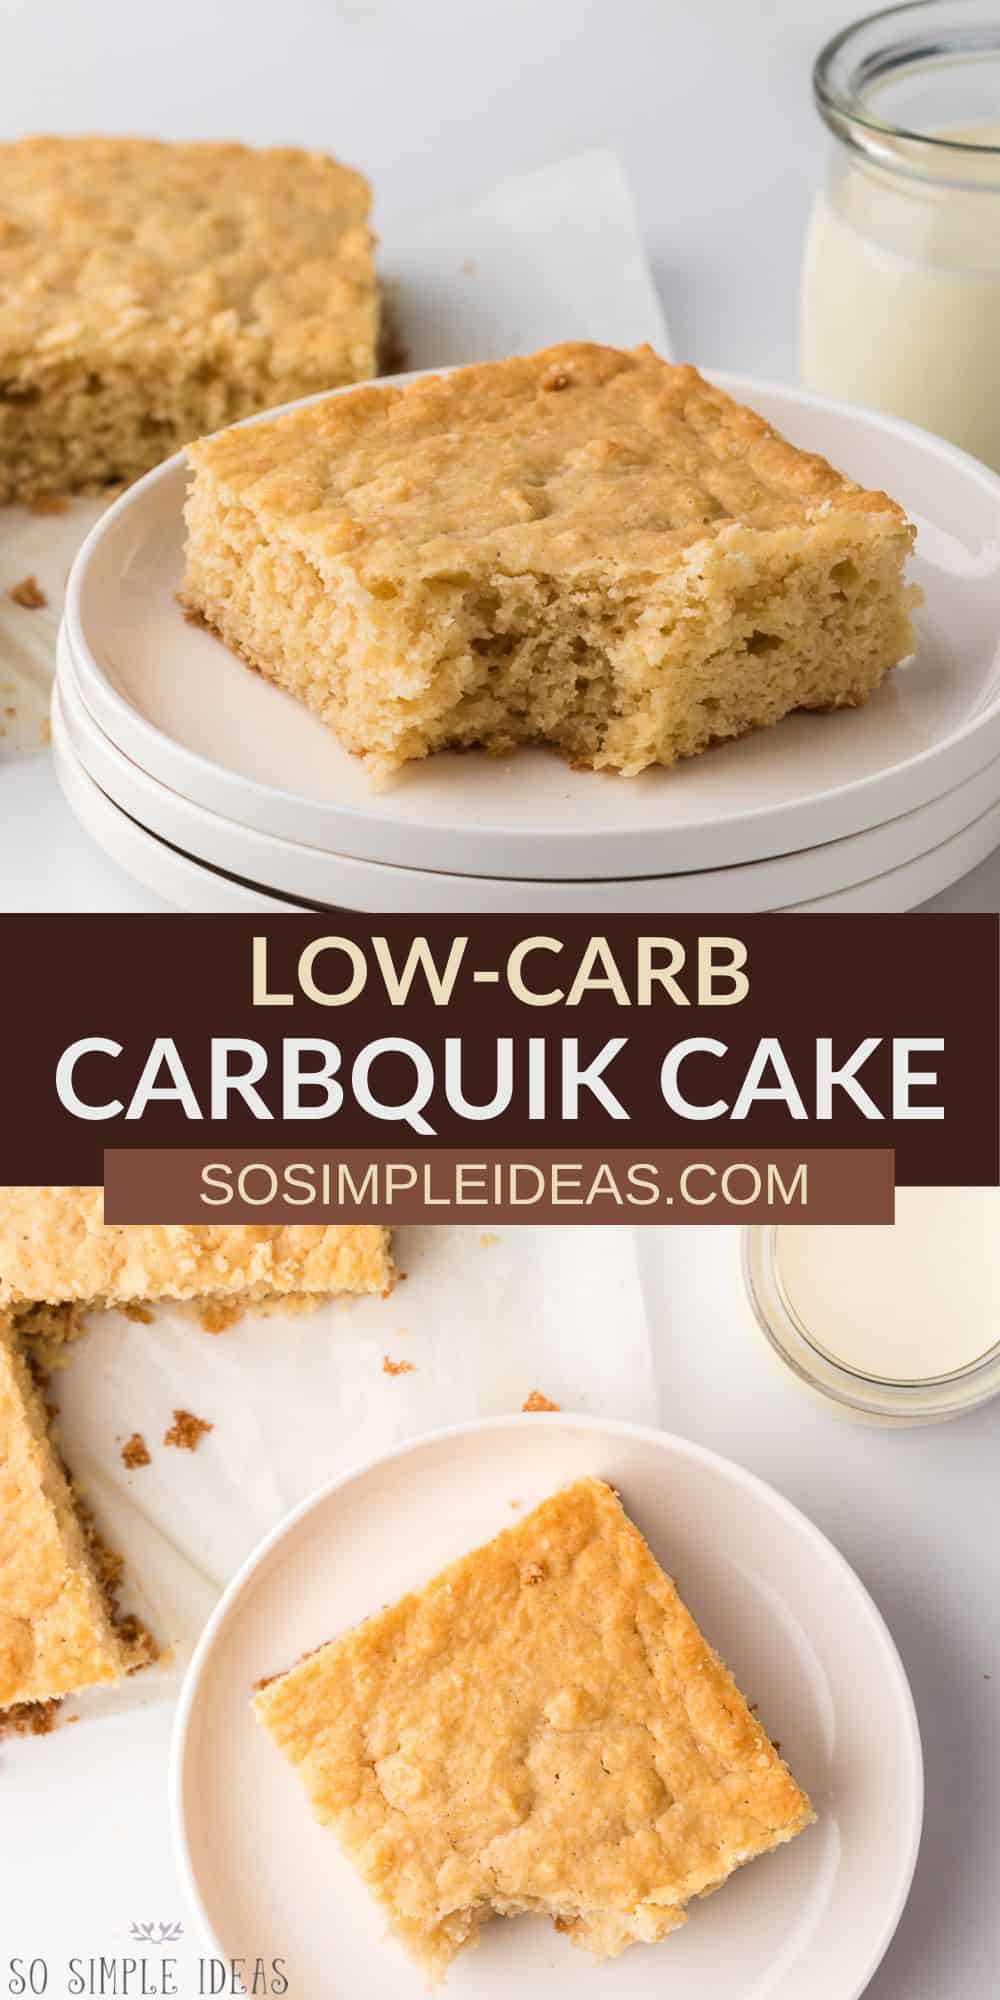 Carbquik Cake - So Simple Ideas